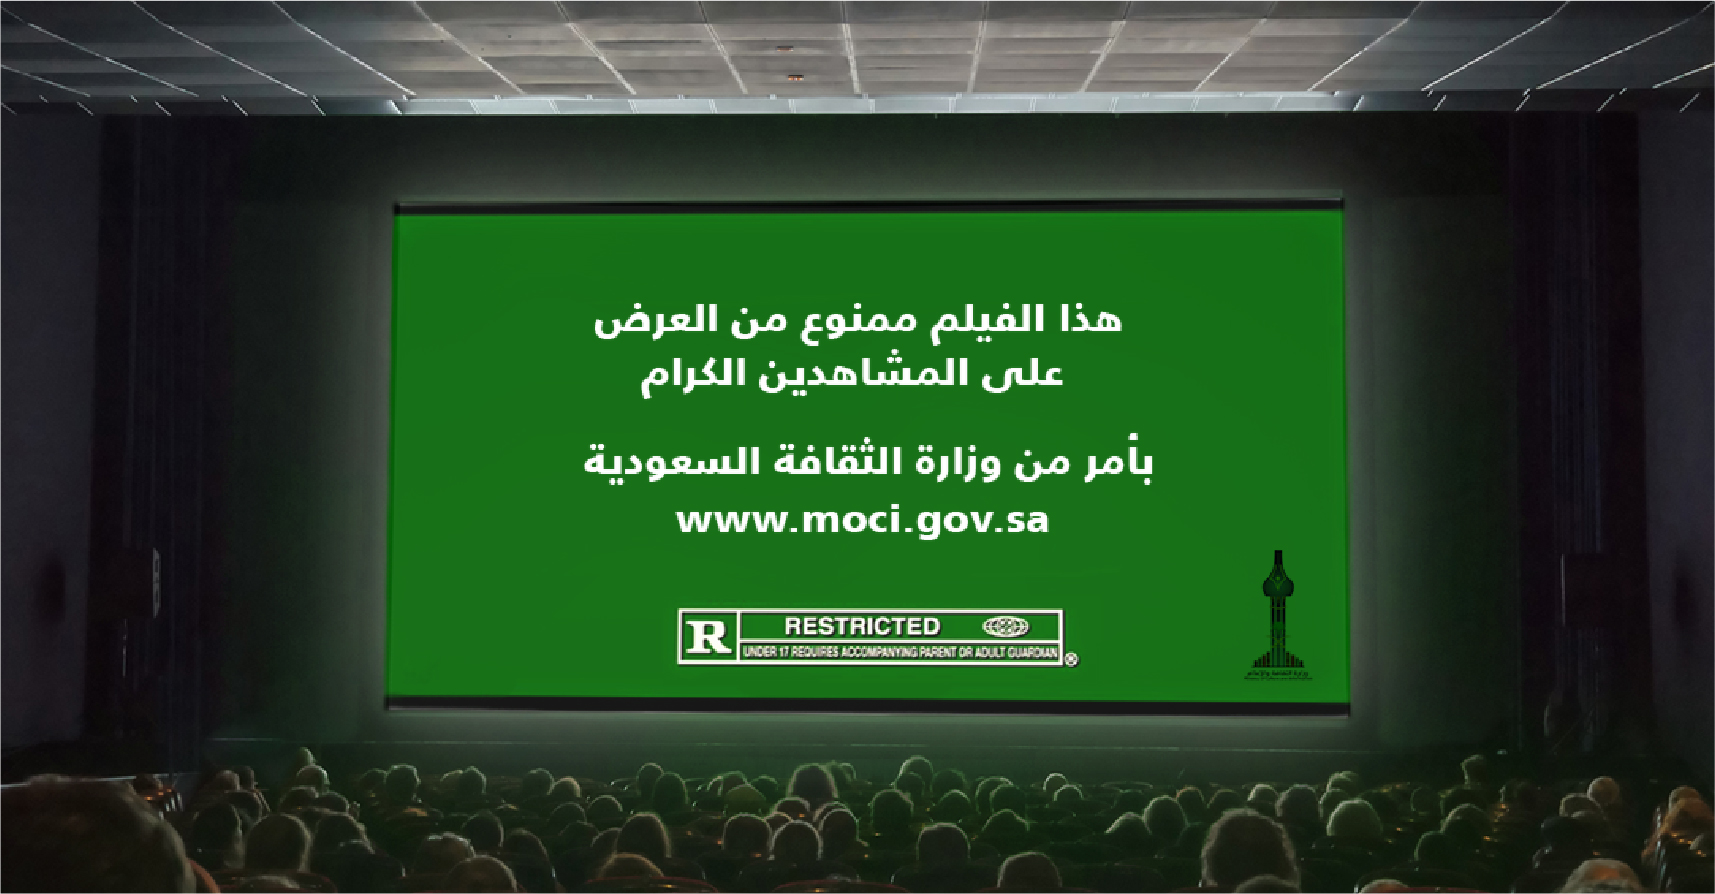 صورة وزارة الثقافة السعودية ترفق قرار افتتاح دور السينما بقرار منع عرض الأفلام فيها